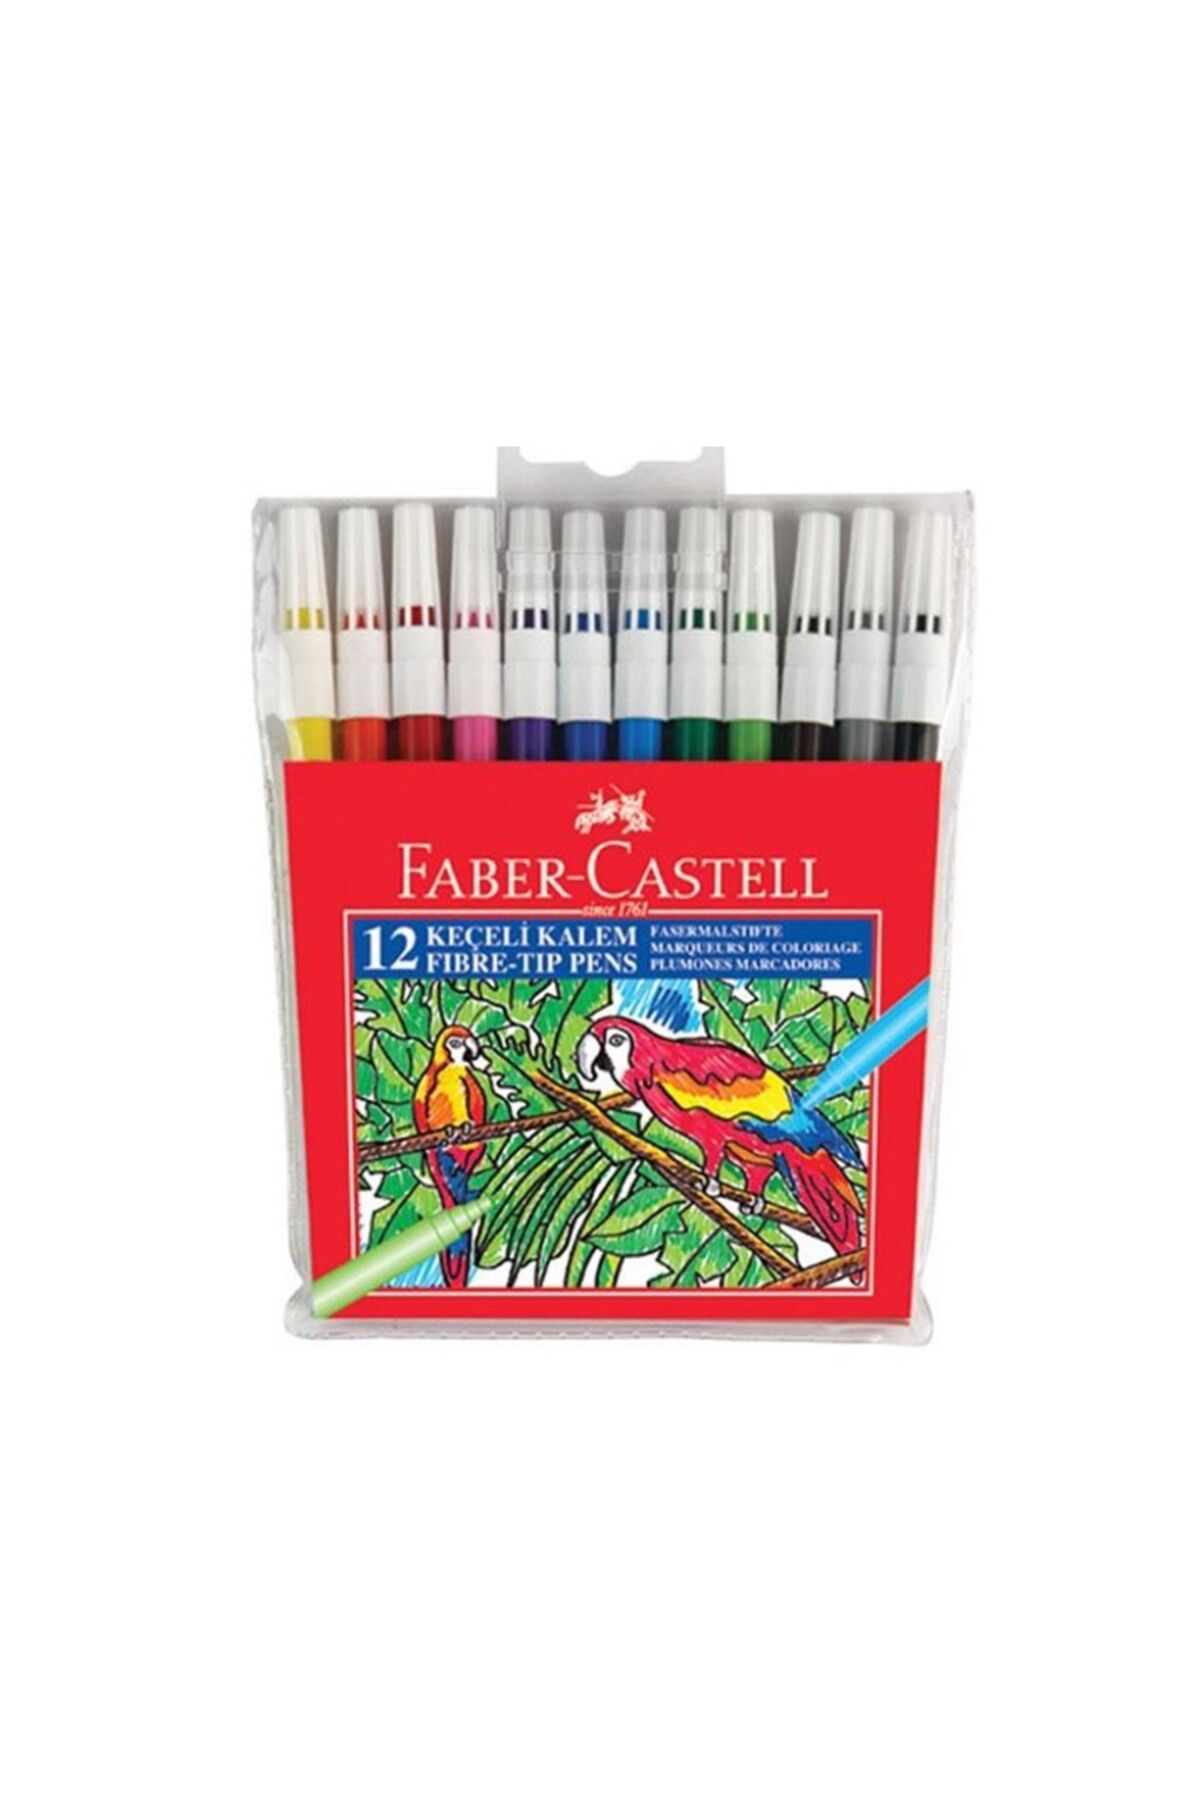 Faber Castell 12 Li Yıkanabilir Keçeli Kalem 155130